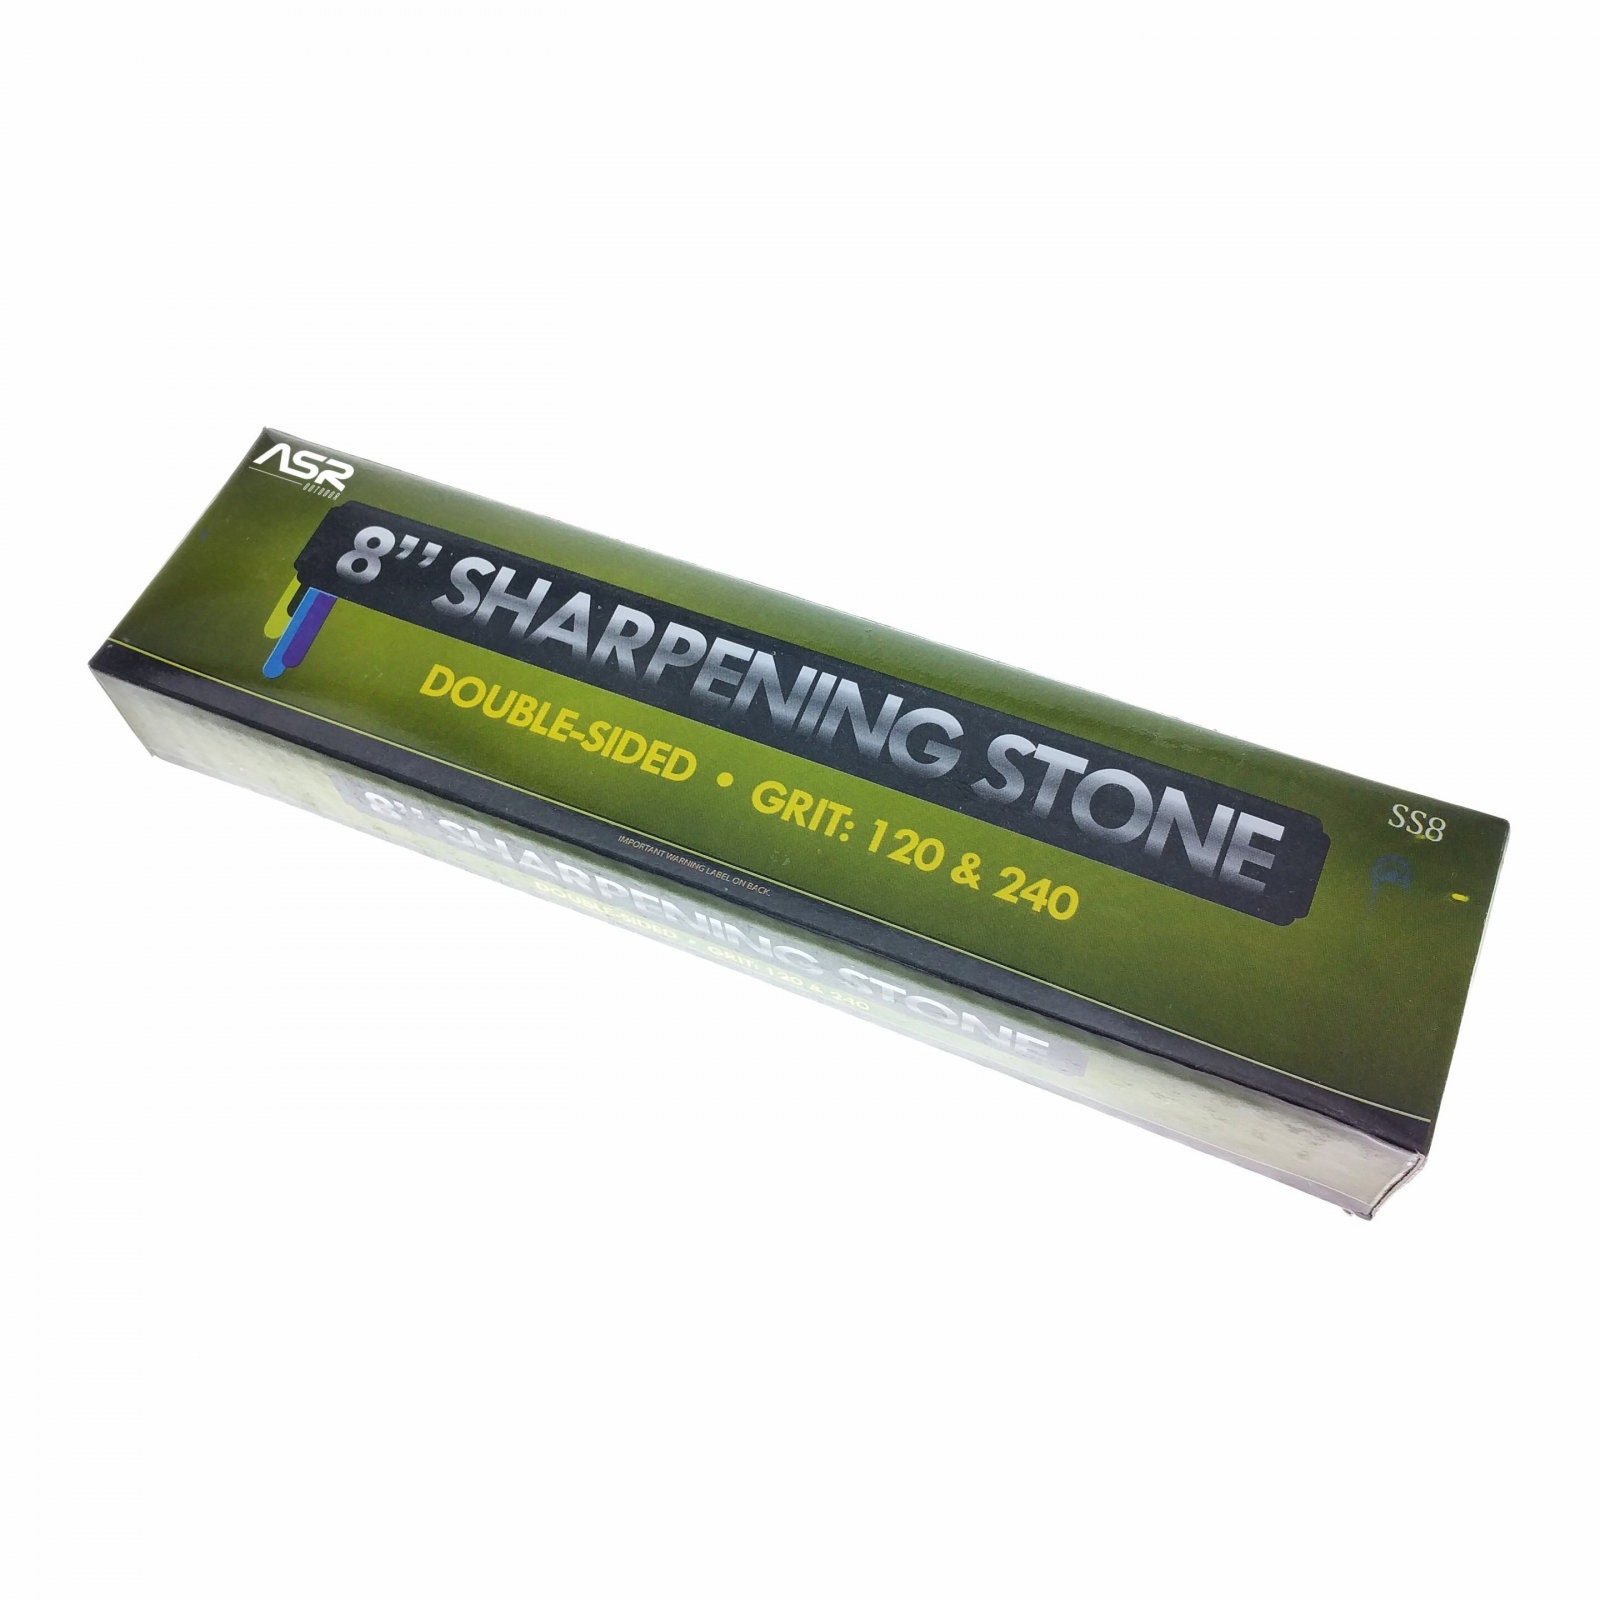 Pocket Whetstone Round Dual Sharpening Grinding Stone Blade Sharpener W/ Box